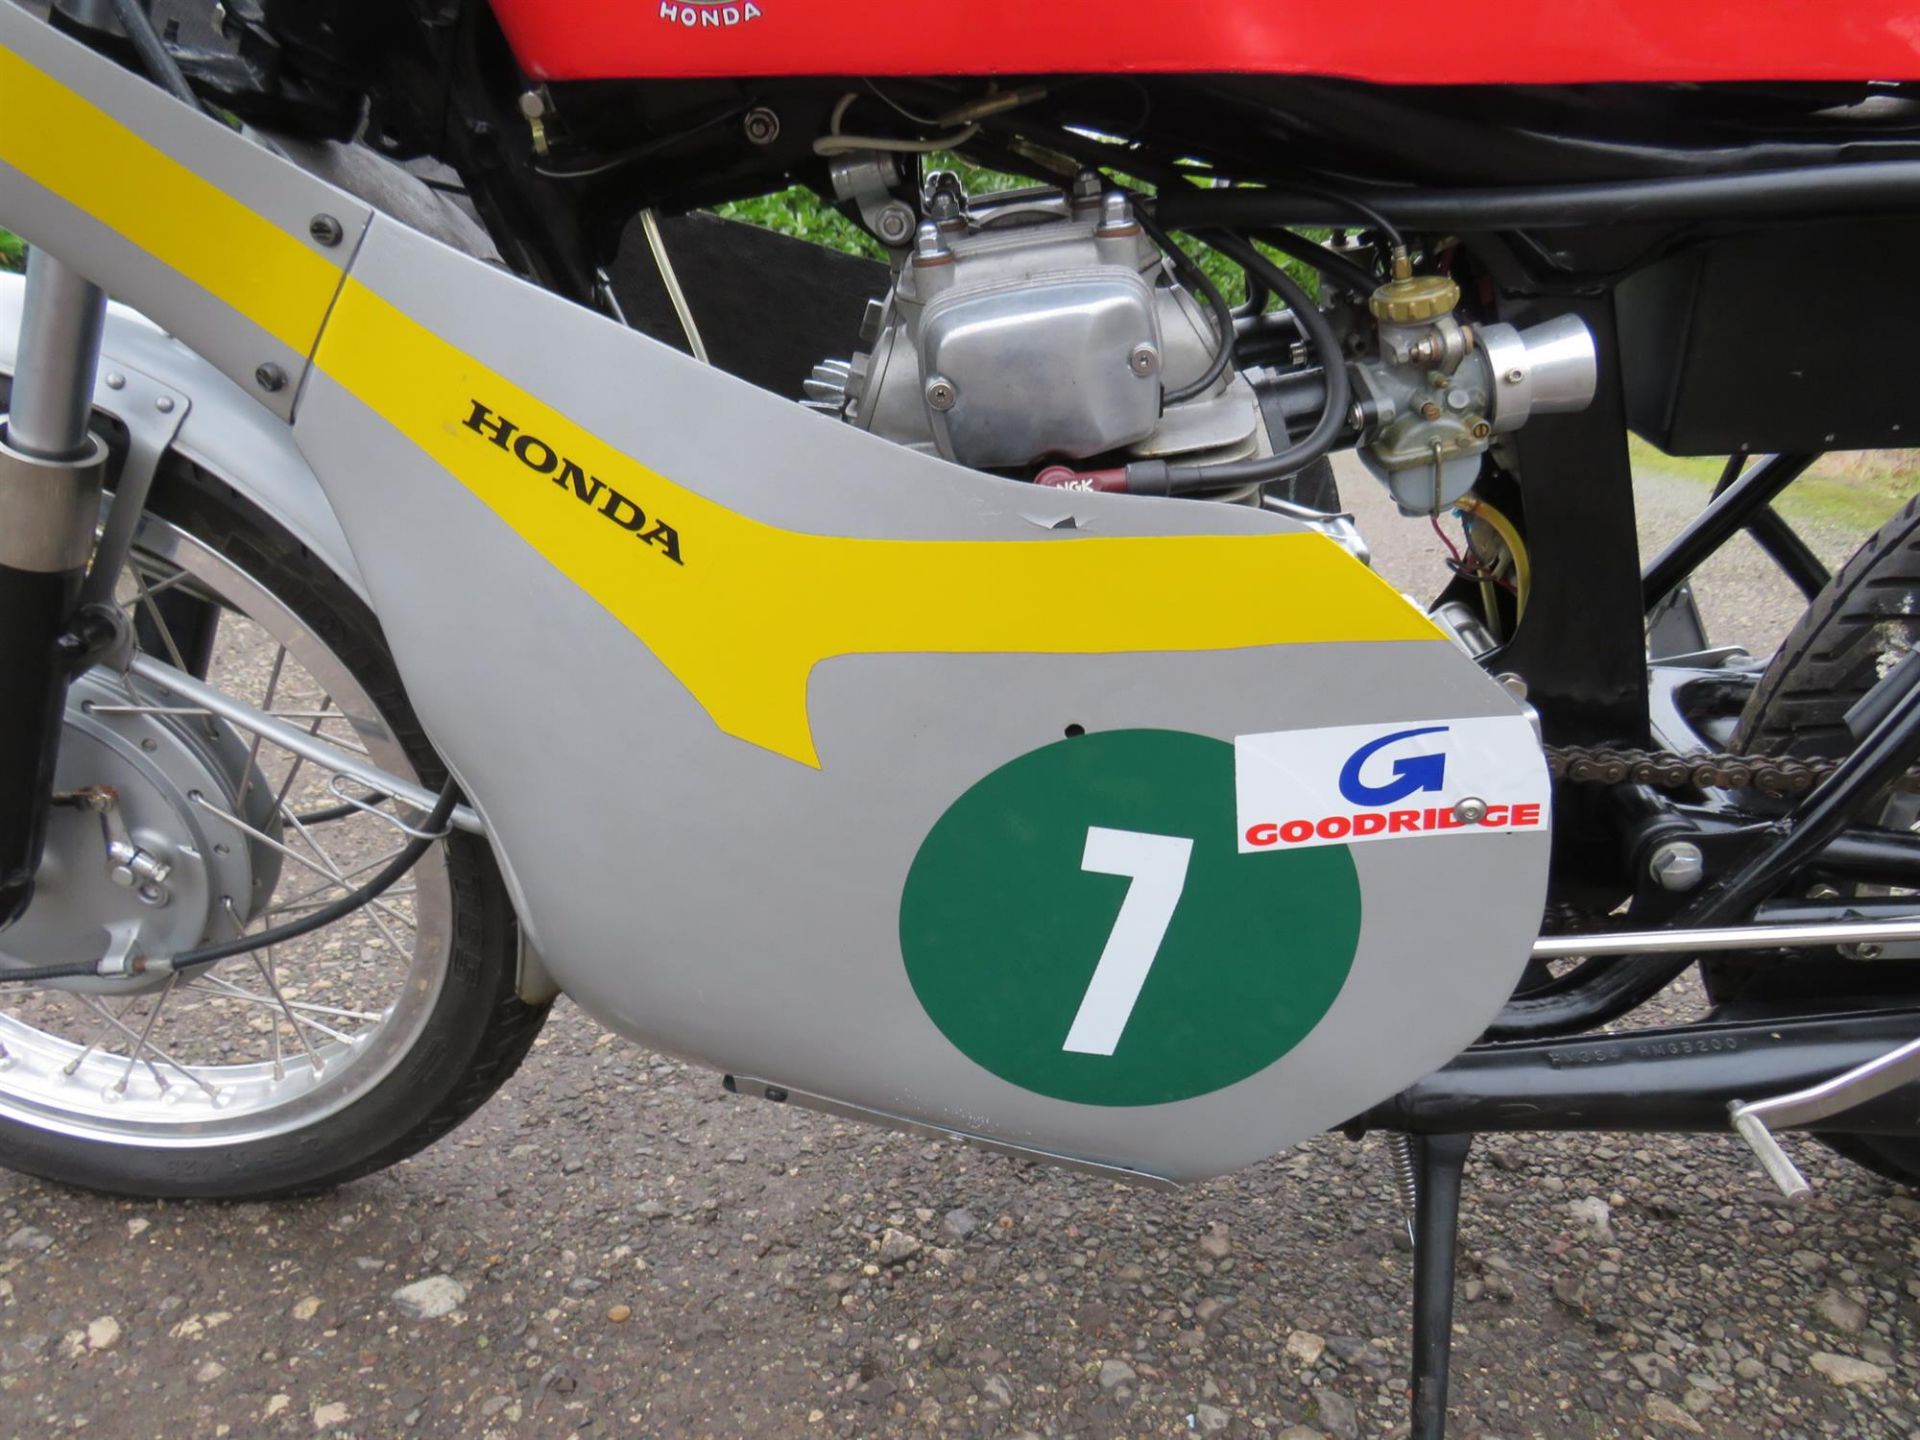 1977 Honda CB200 'RC116' Replica 198cc - Image 4 of 10